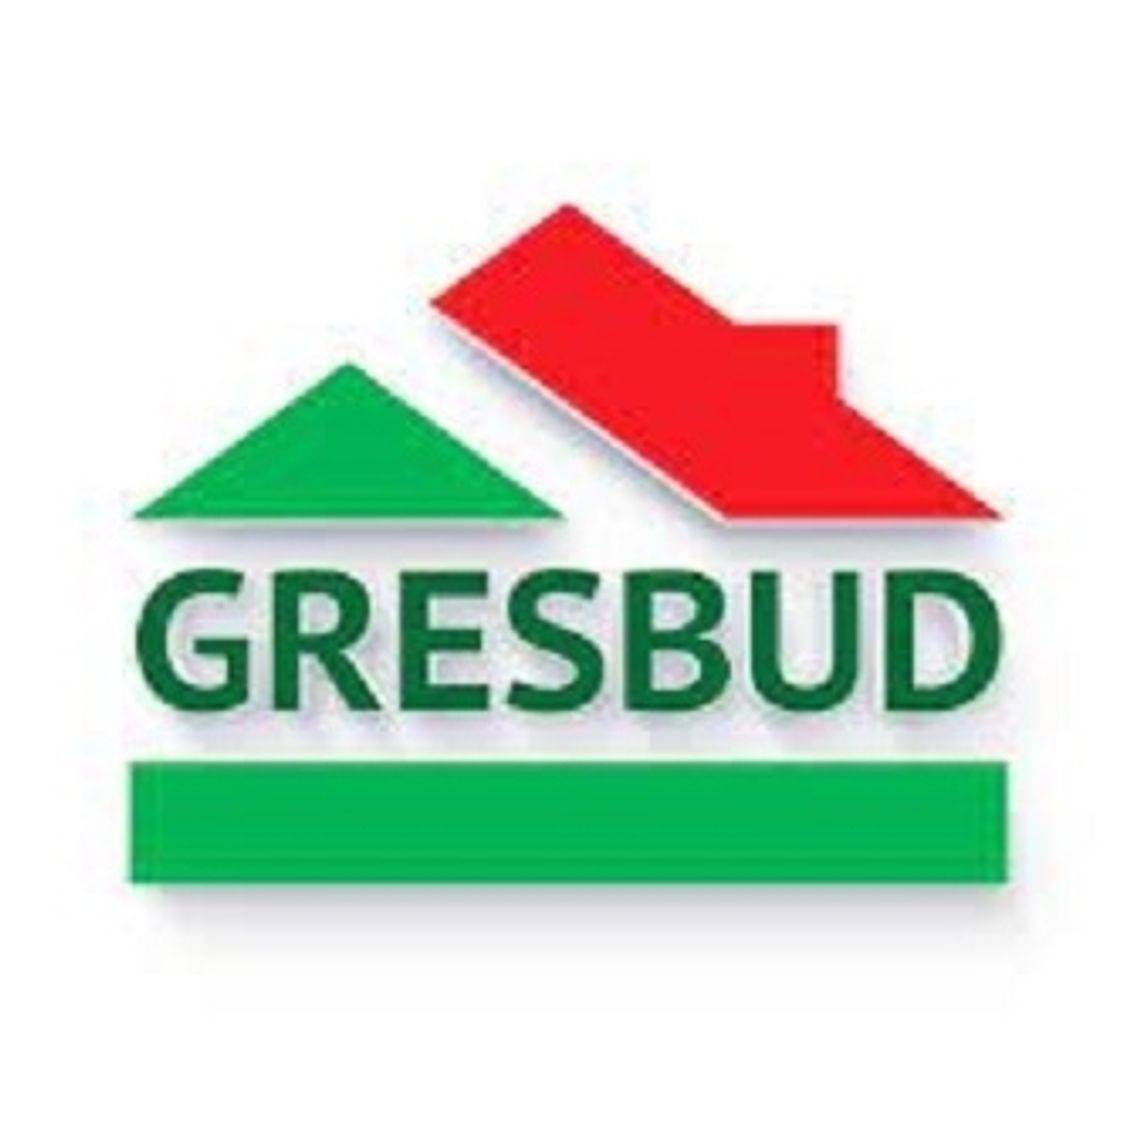 Gresbud